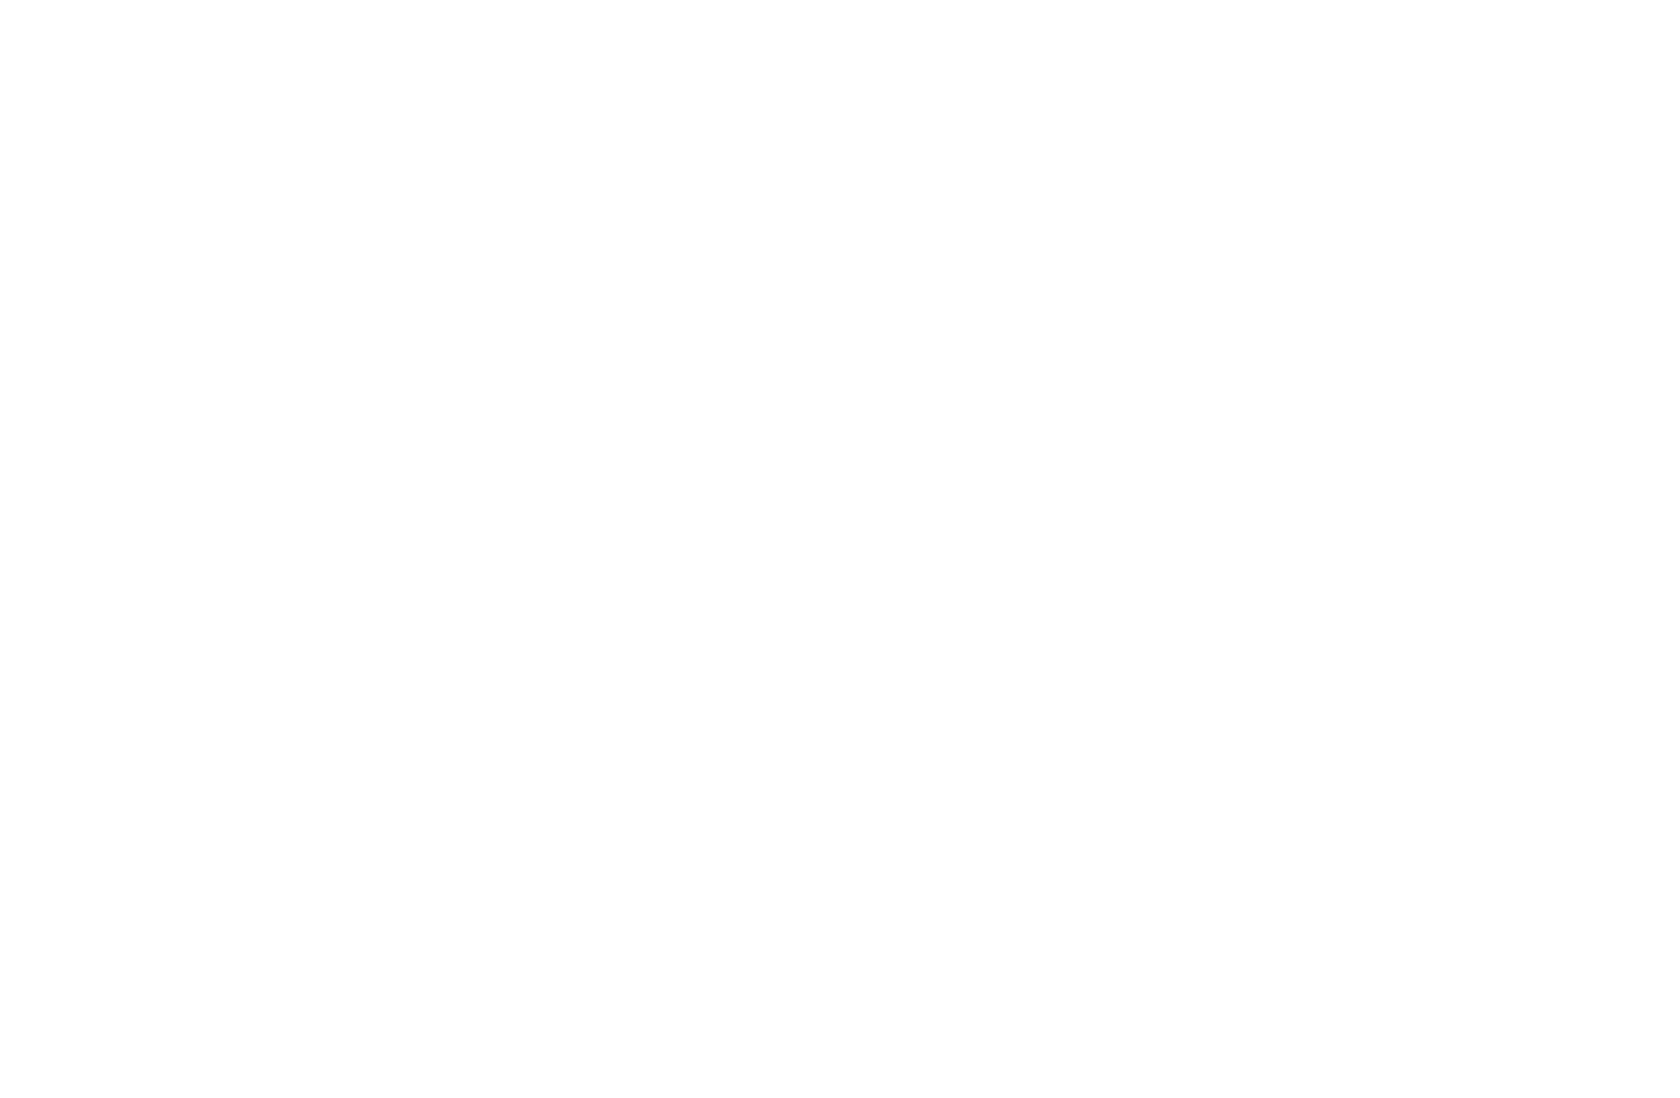 Андрей Макушиннің «Соғысқа қарсы кино: өнер зорлық-зомбылықпен қалай күреседі және қоғамға диагноз қояды» дәрісінде